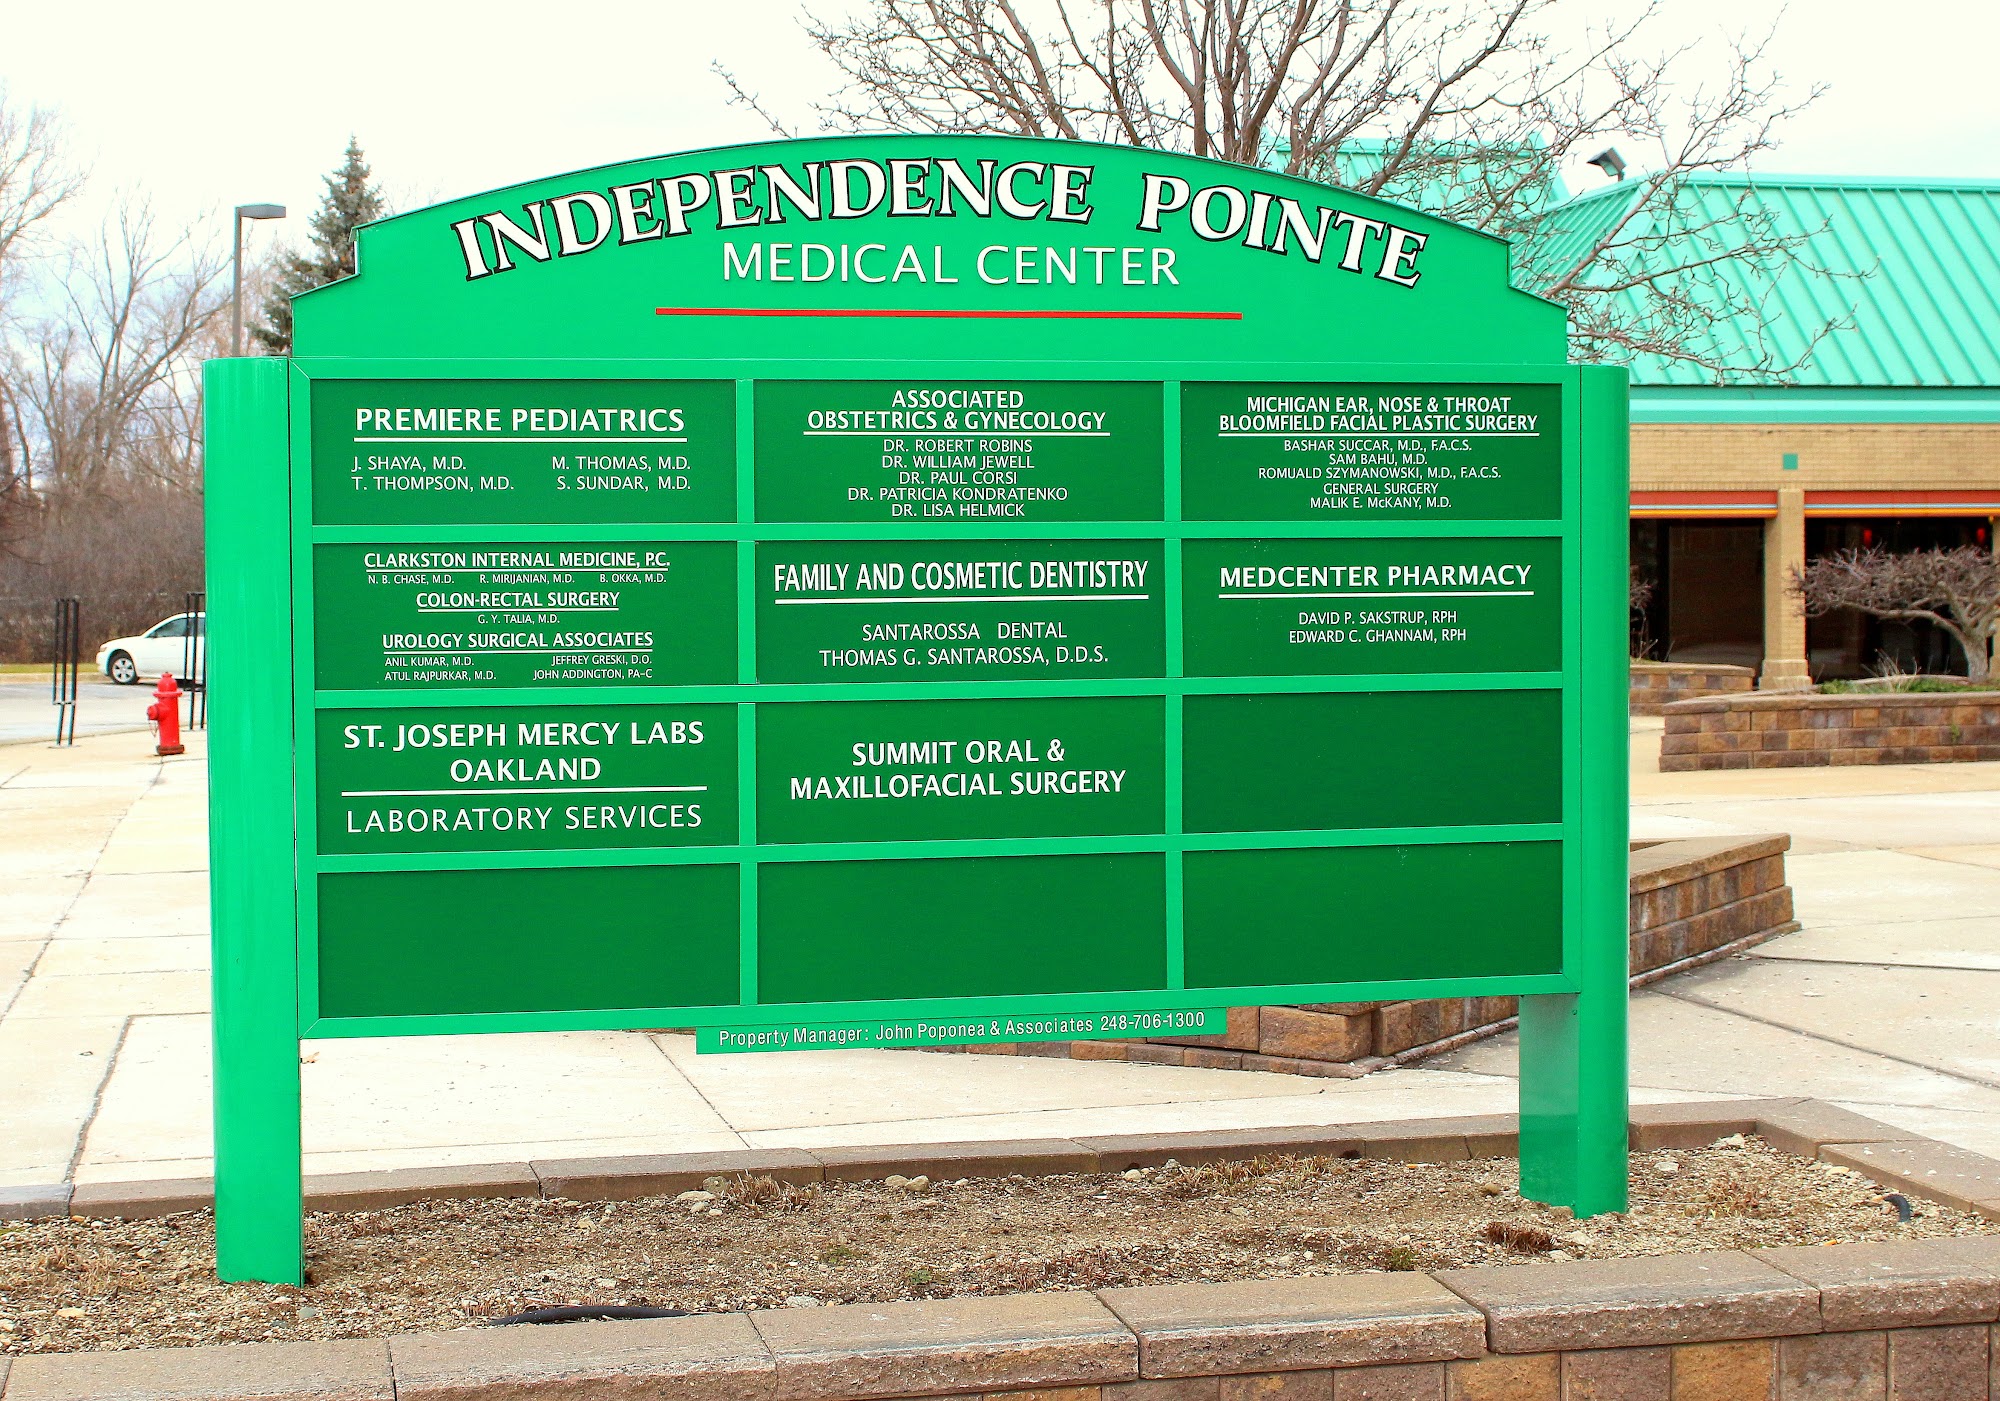 Medcenter Pharmacy